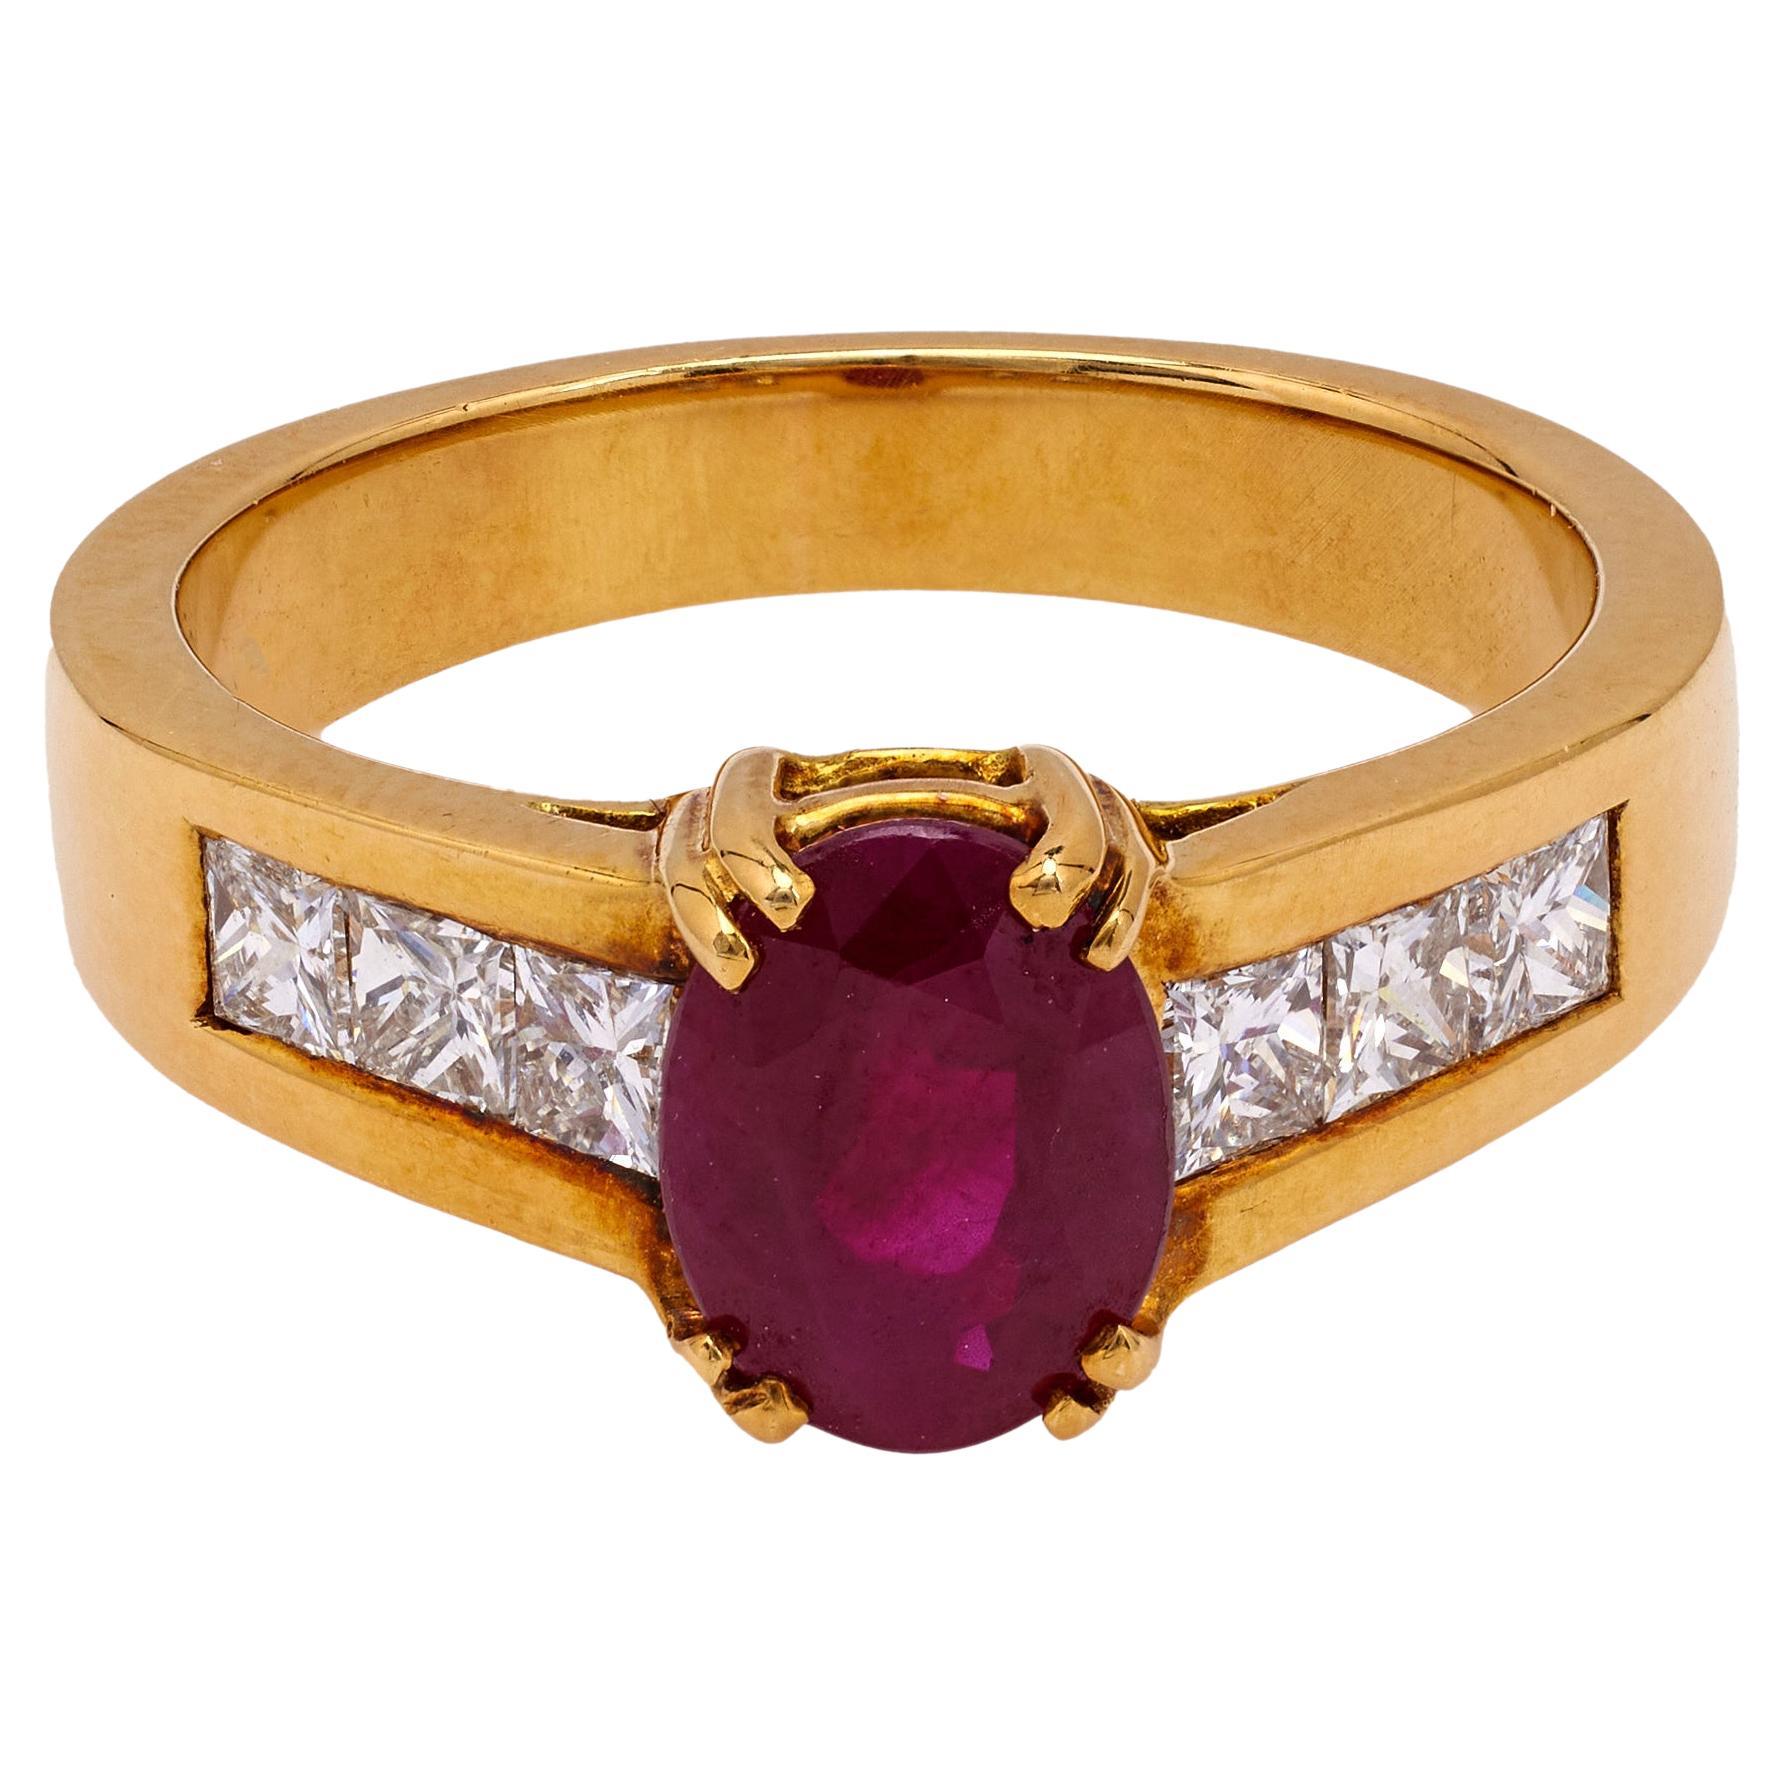 Französischer Vintage-Ring aus 18 Karat Gelbgold mit Rubin und Diamant